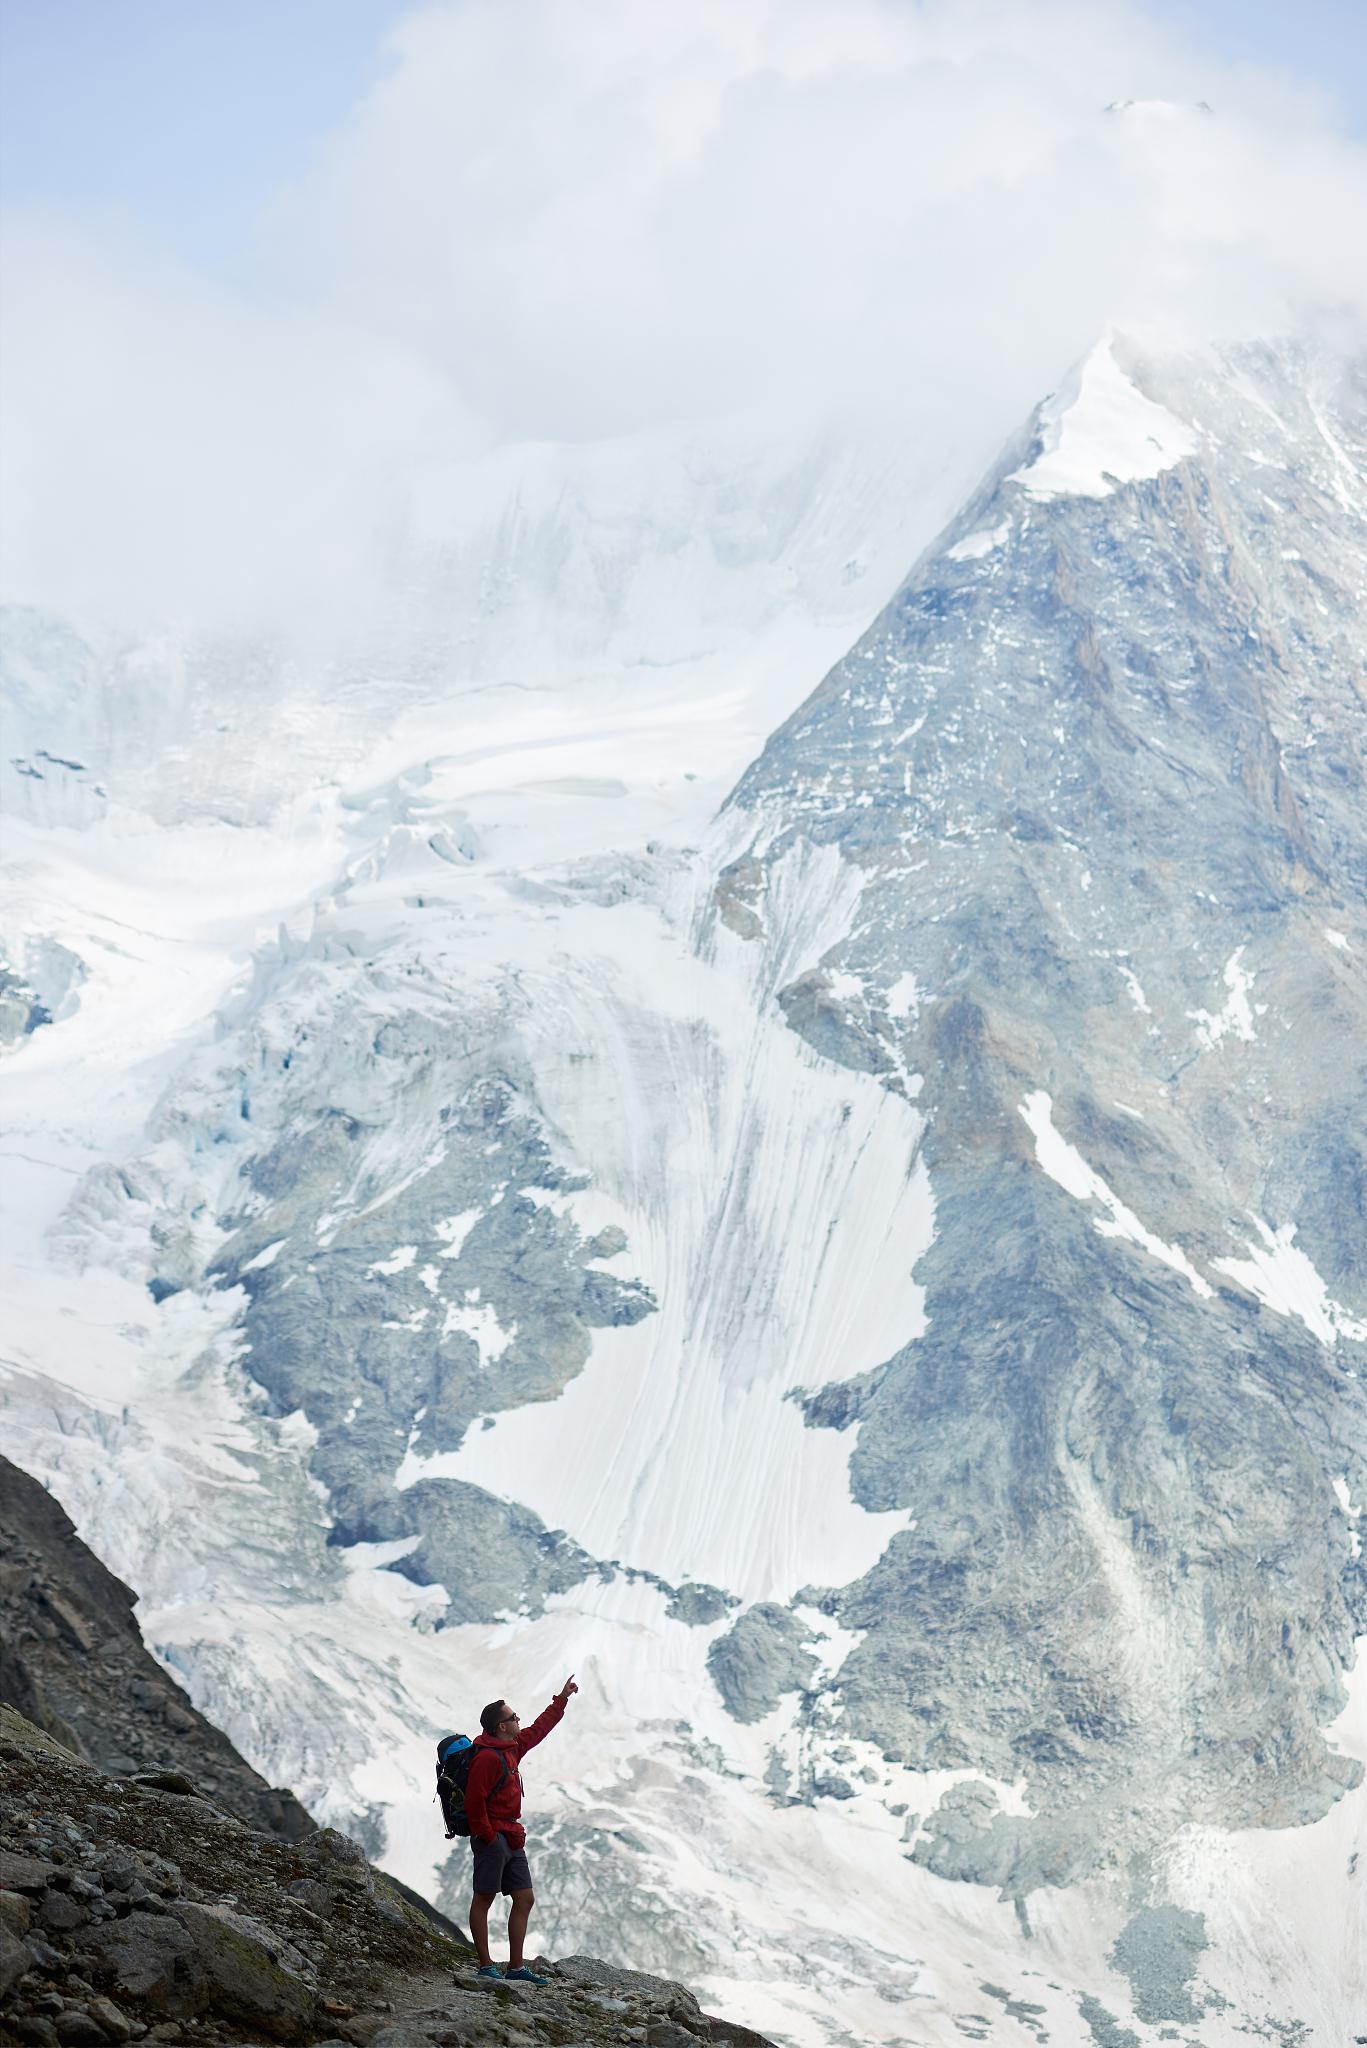 珠穆朗玛峰:世界的屋脊 珠穆朗玛峰,位于中国与尼泊尔的交界,是世界上